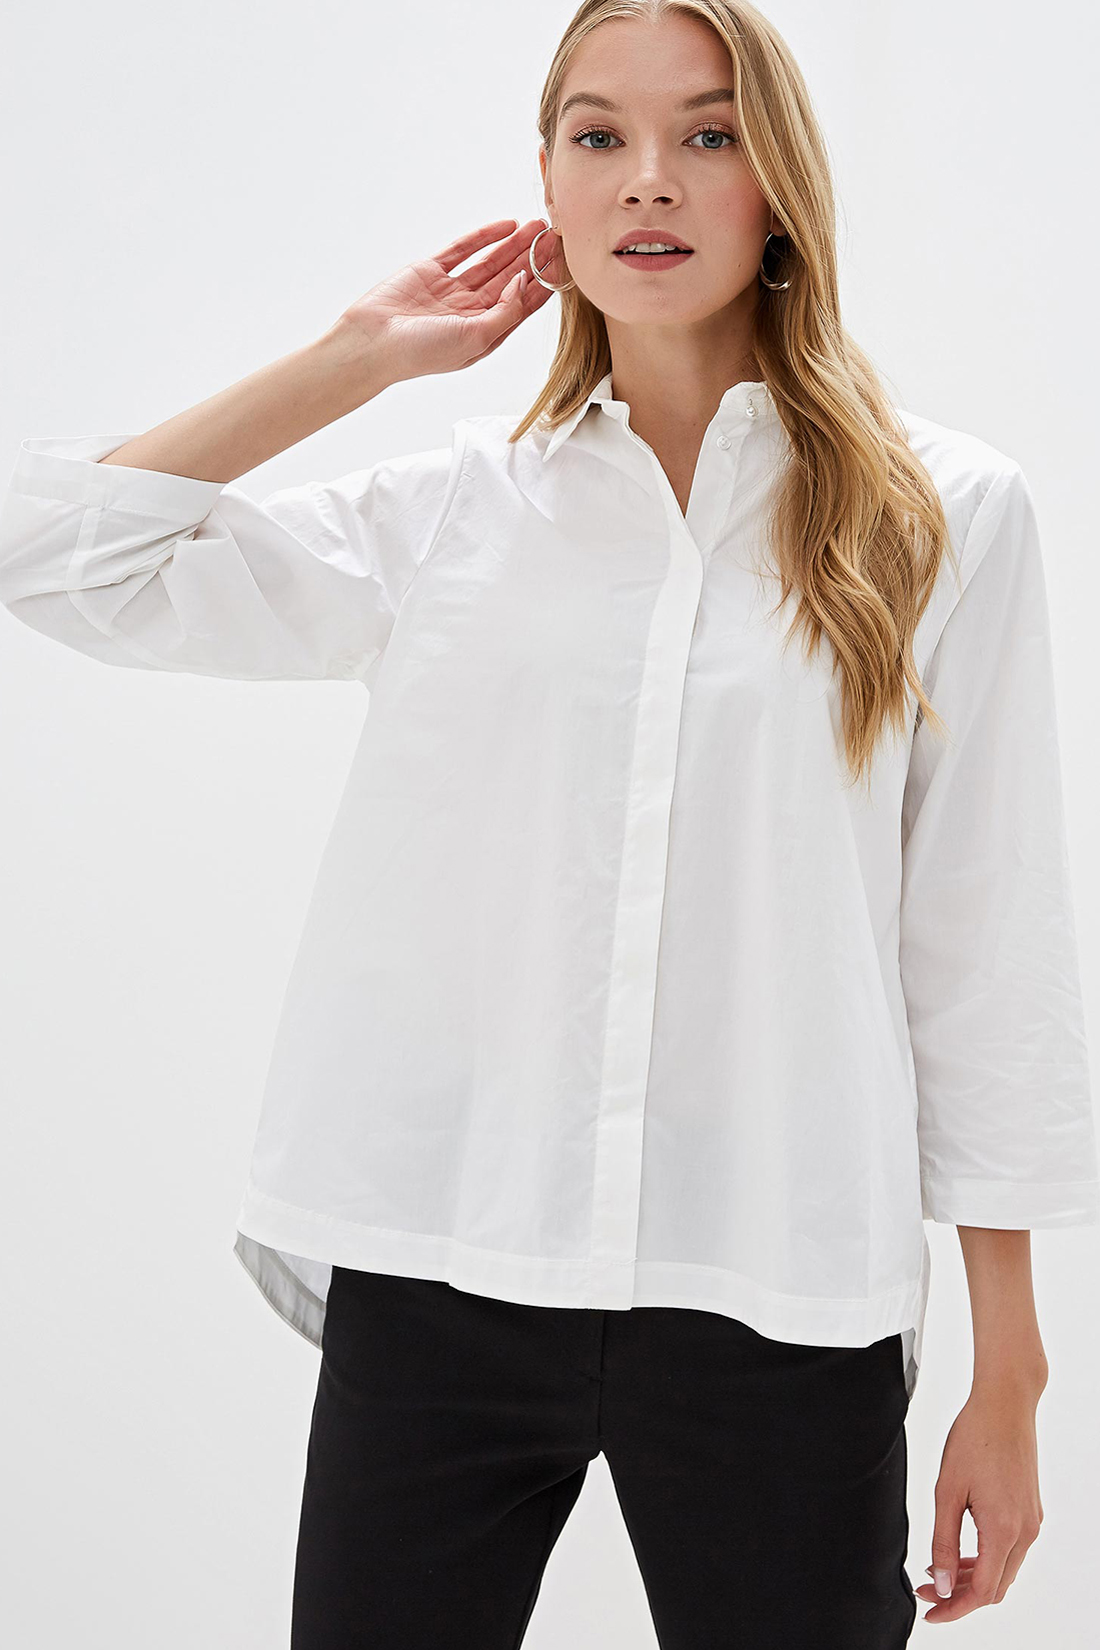 Длинные белые рубашки женские купить. Блуза Baon, размер s, White. Рубашка женская Baon b1722512 белая s. Баон белая рубашка. Широкая рубашка женская.